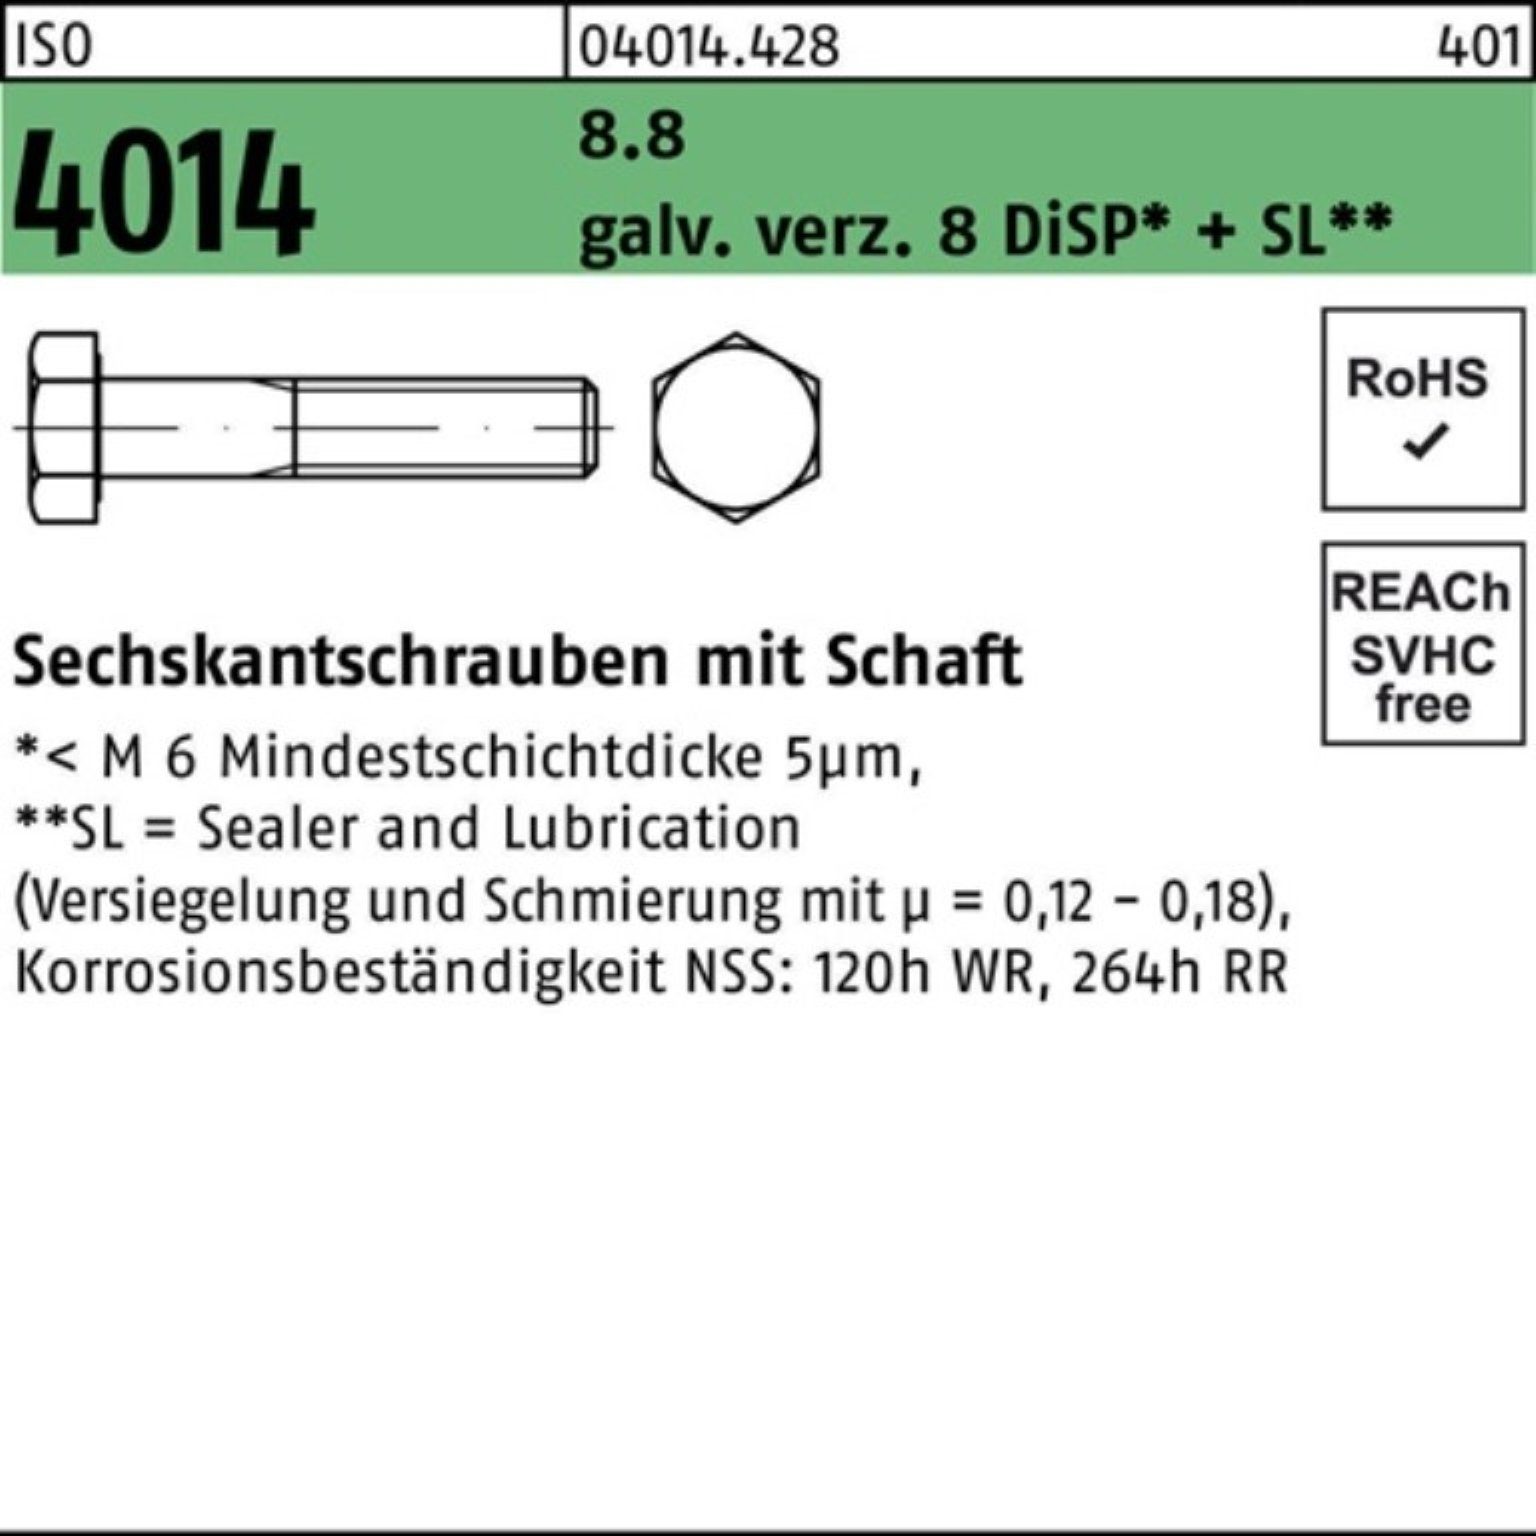 Bufab Sechskantschraube 100er Pack Sechskantschraube ISO 4014 Schaft M8x100 8.8 galv.verz. 8 D